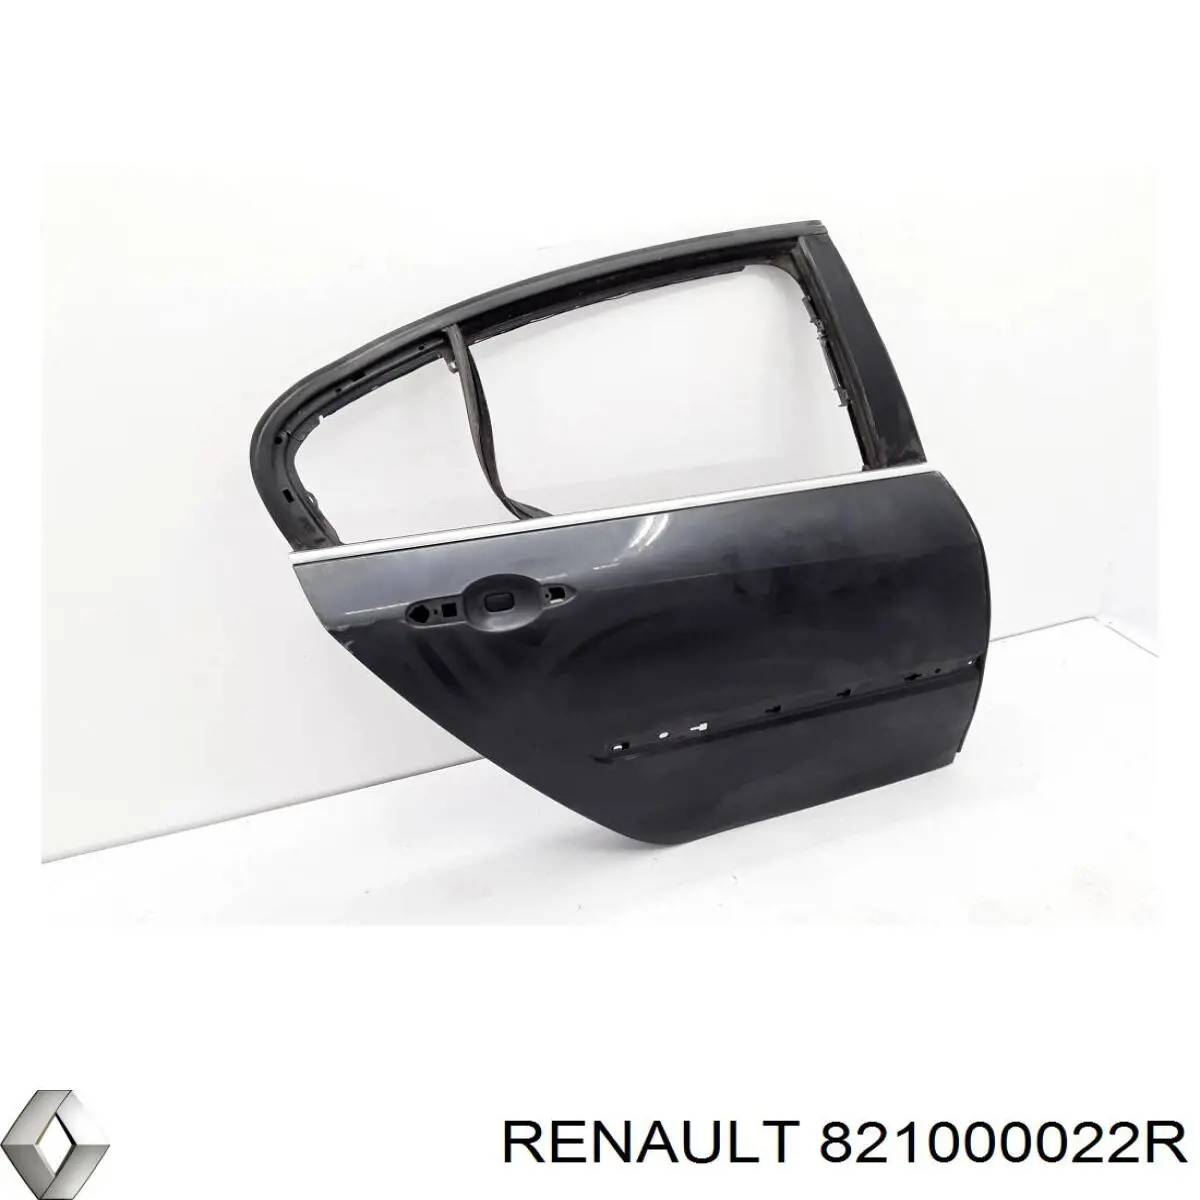 Задняя правая дверь Рено Лагуна 3 (Renault Laguna)